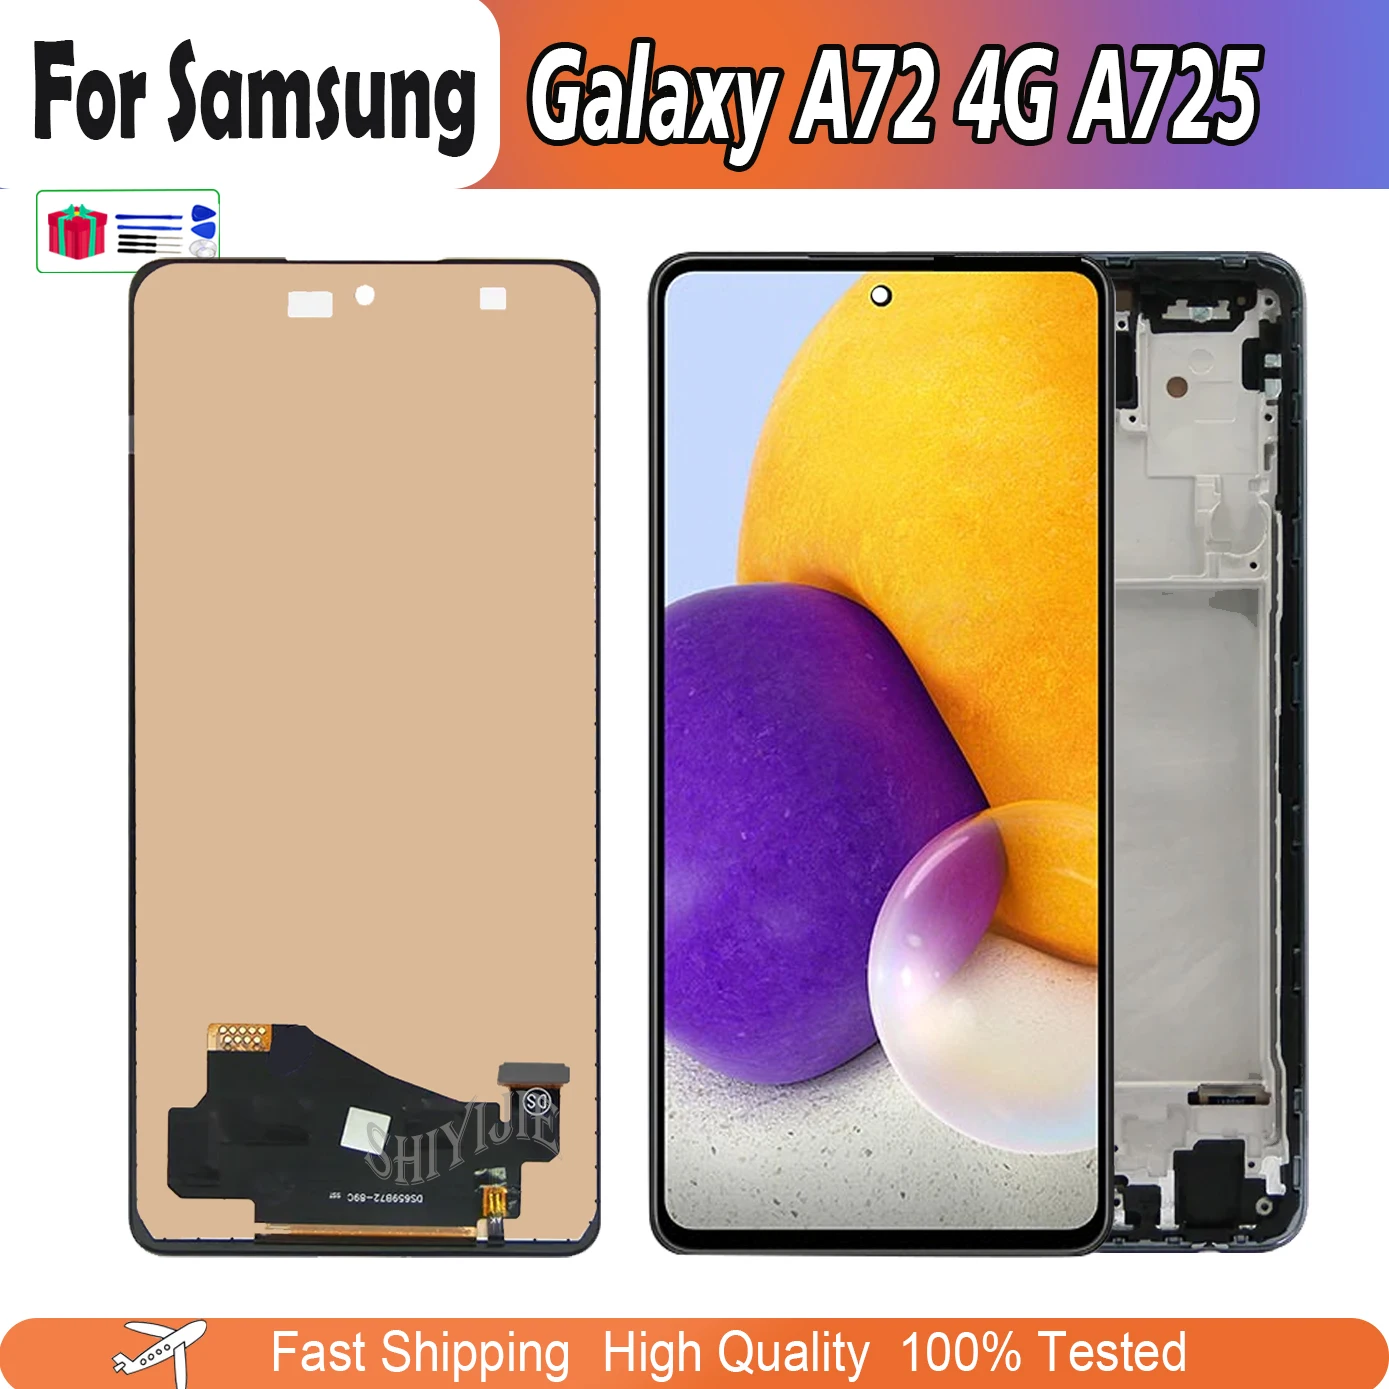 

ЖК-дисплей 6,7 дюйма для Samsung Galaxy A72, 4G, A725F, сенсорный ЖК-дисплей для Samsung A725F/DS, A725M, запчасти для ремонта, набор дигитайзера